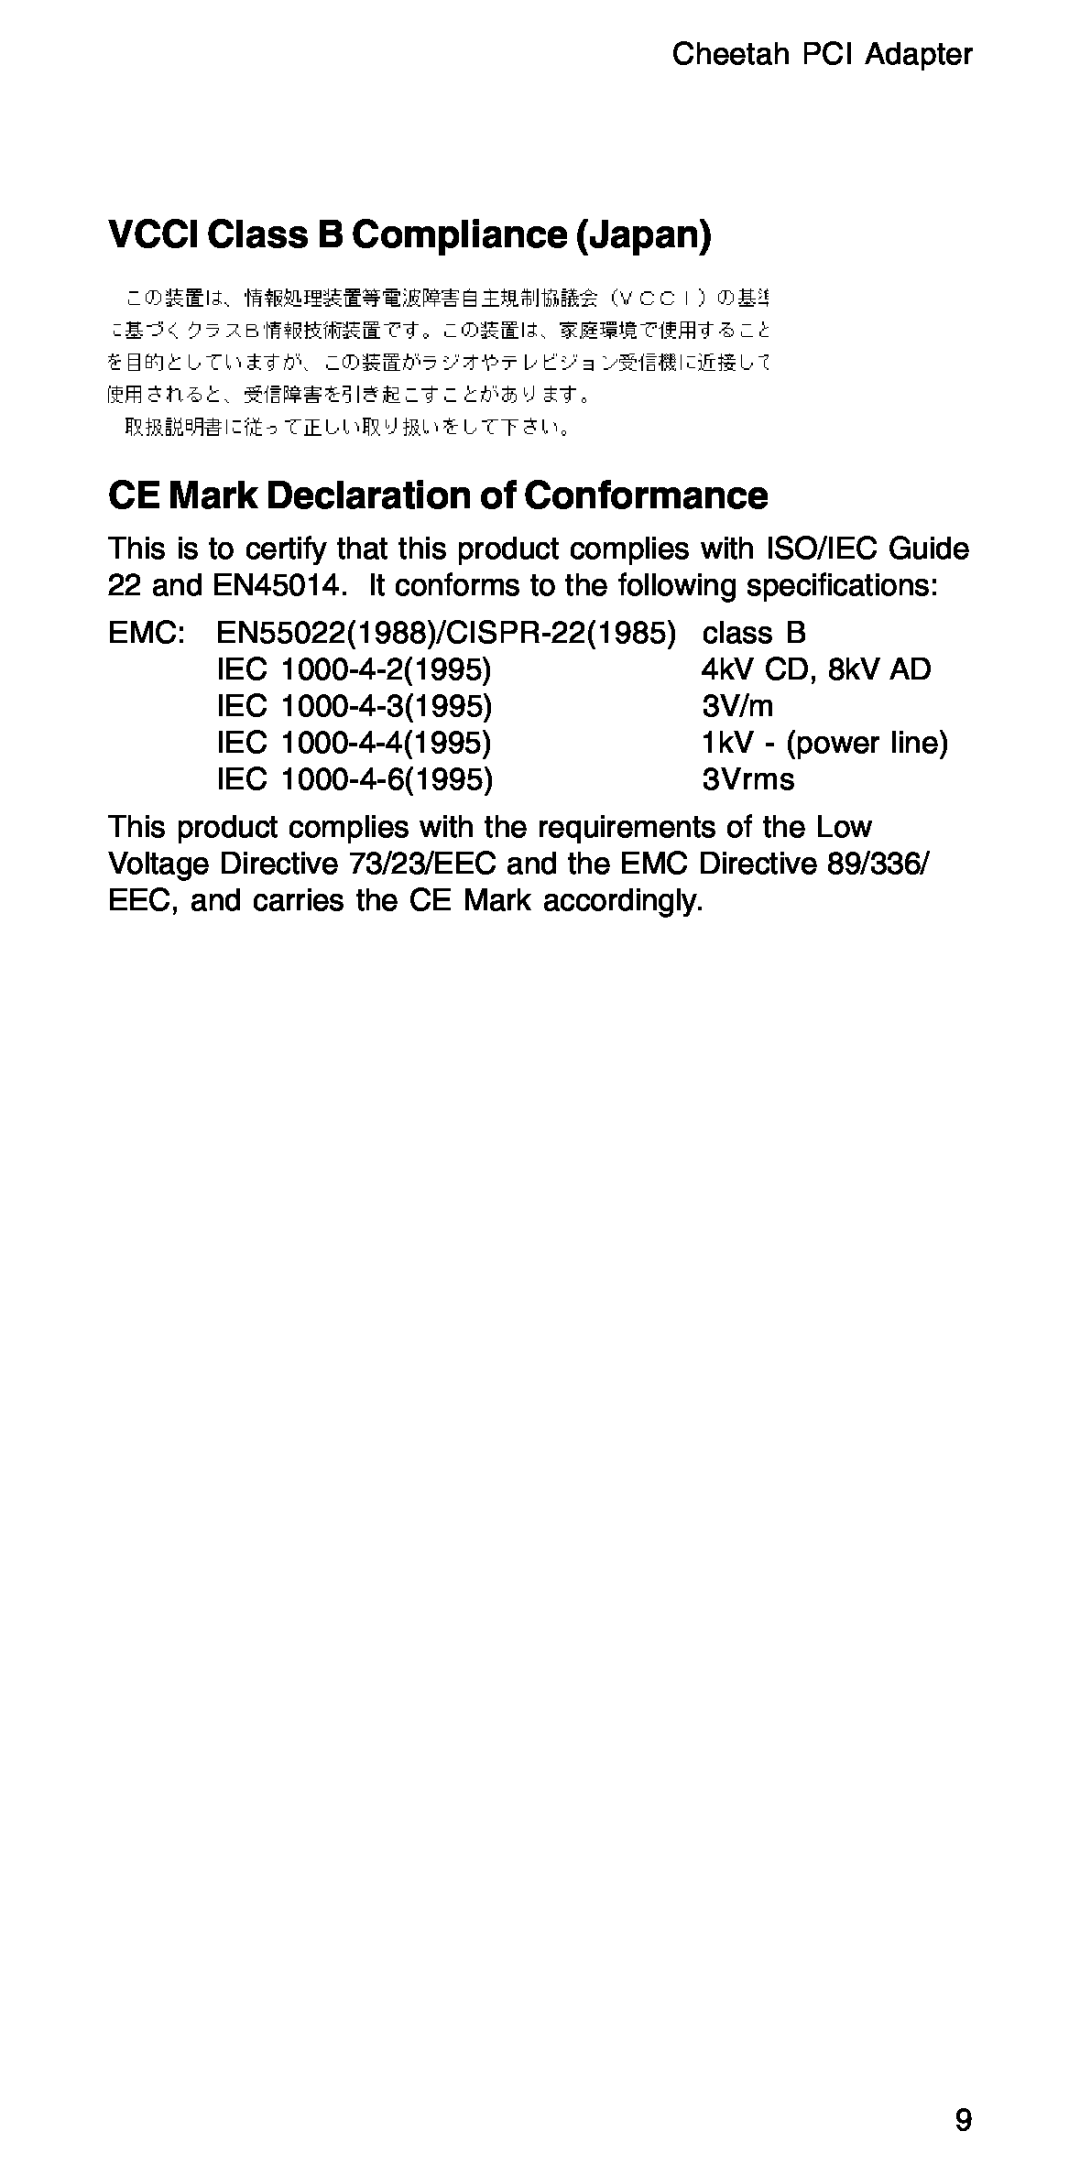 Accton Technology EN1207D-TX manual VCCI Class B Compliance Japan CE Mark Declaration of Conformance, 1kV - power line 